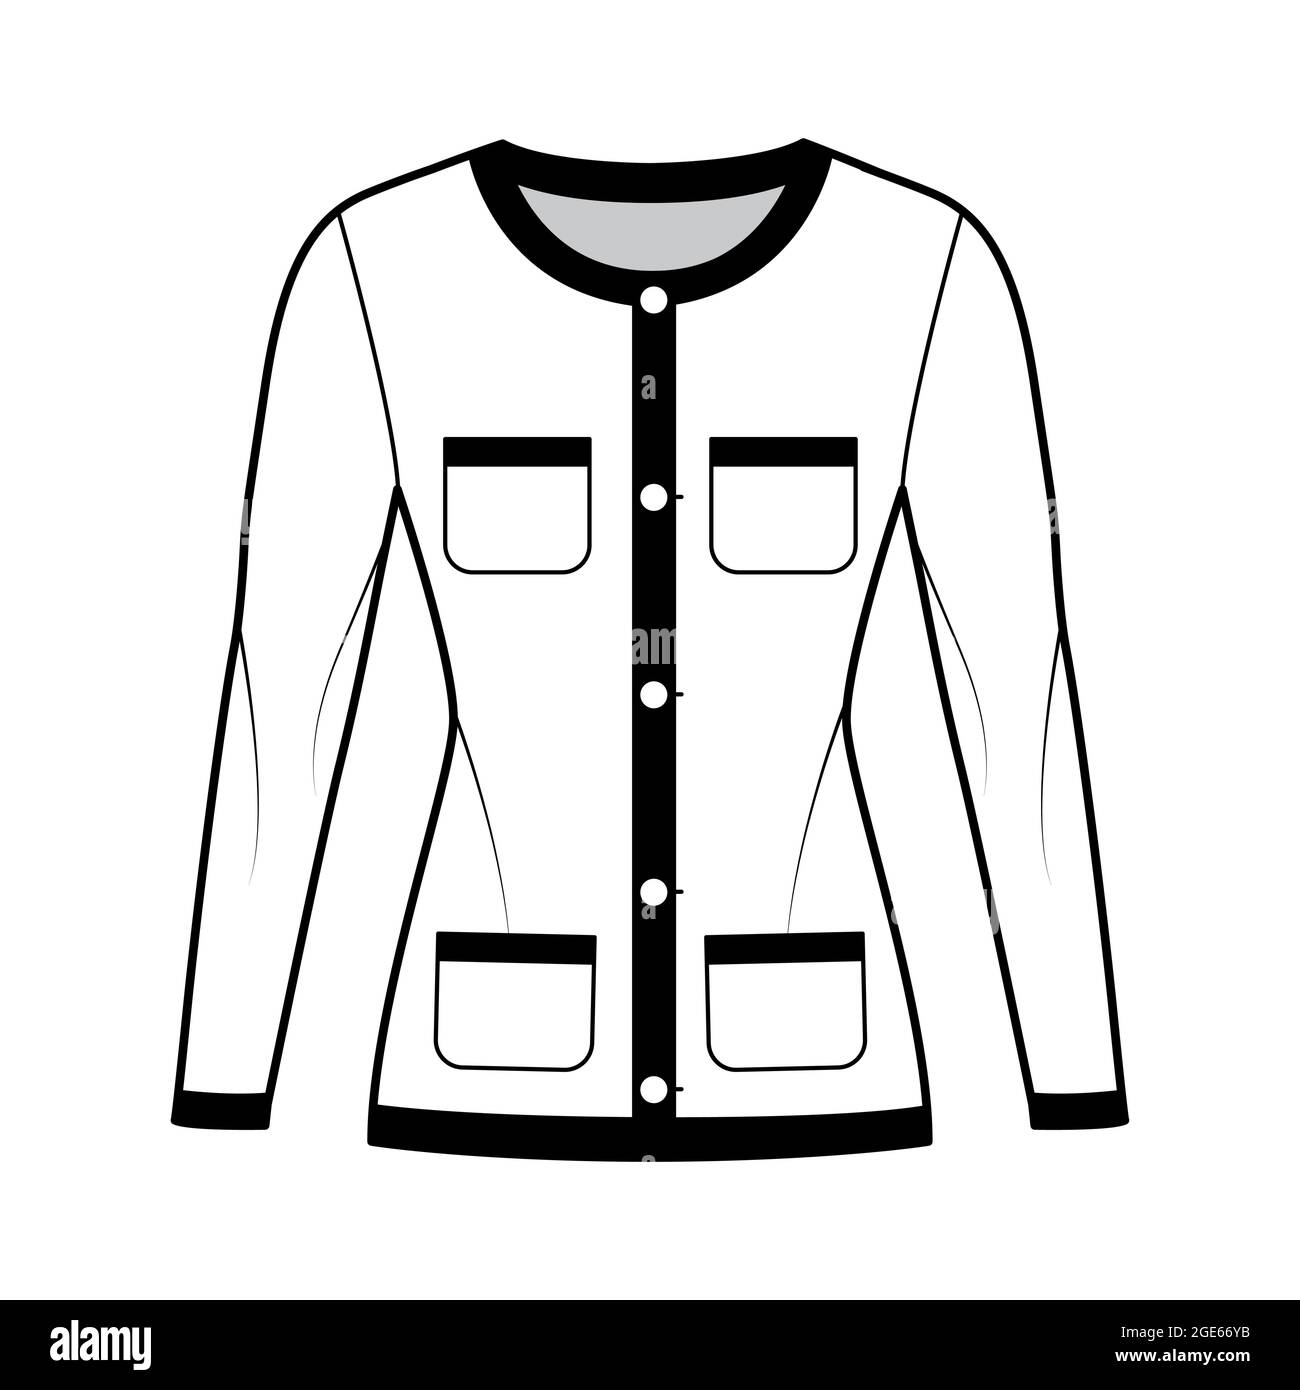 Blazer Jacke wie Chanel Anzug technische Mode Illustration mit langen  Ärmeln, aufgesetzte Taschen, taillierte Körper, Knopfverschluss.  Flatcoat-Schablone vorne, in weißer Farbgebung. Frauen, Männer CAD-Modell  Stock-Vektorgrafik - Alamy